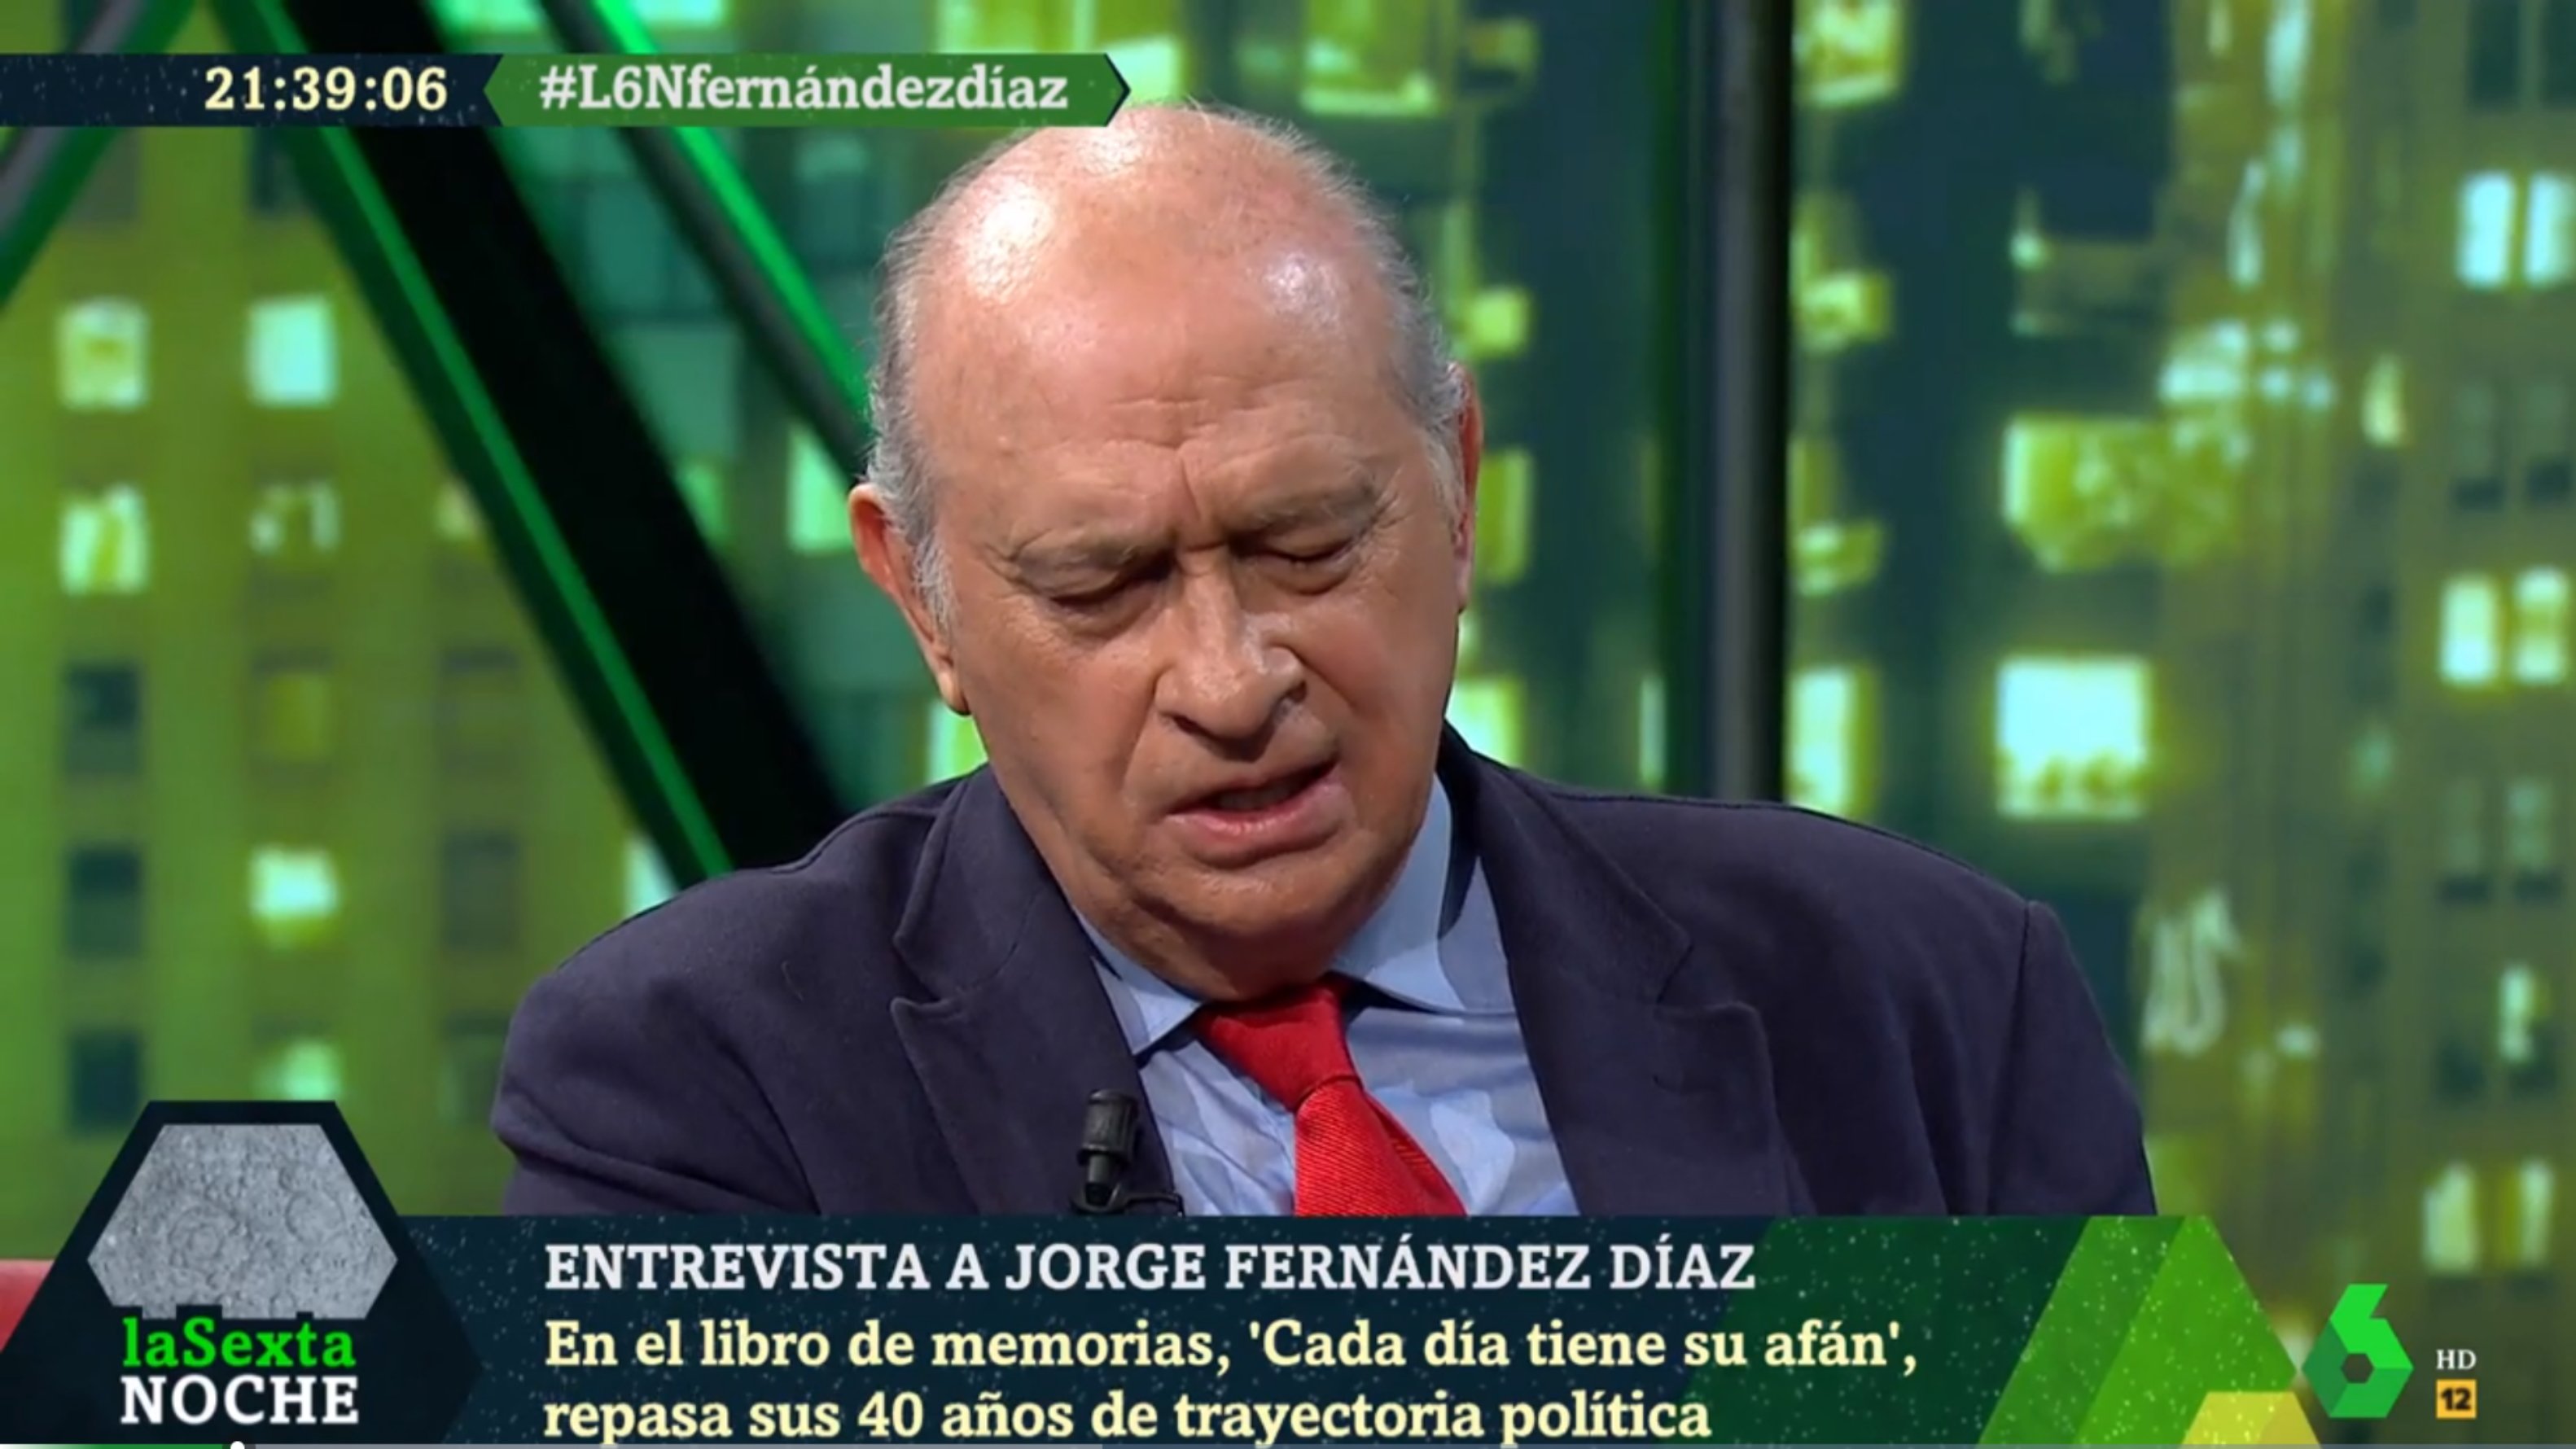 El exministro Fernández Díaz en La Sexta, las redes se tapan la nariz: "Cloaquero"